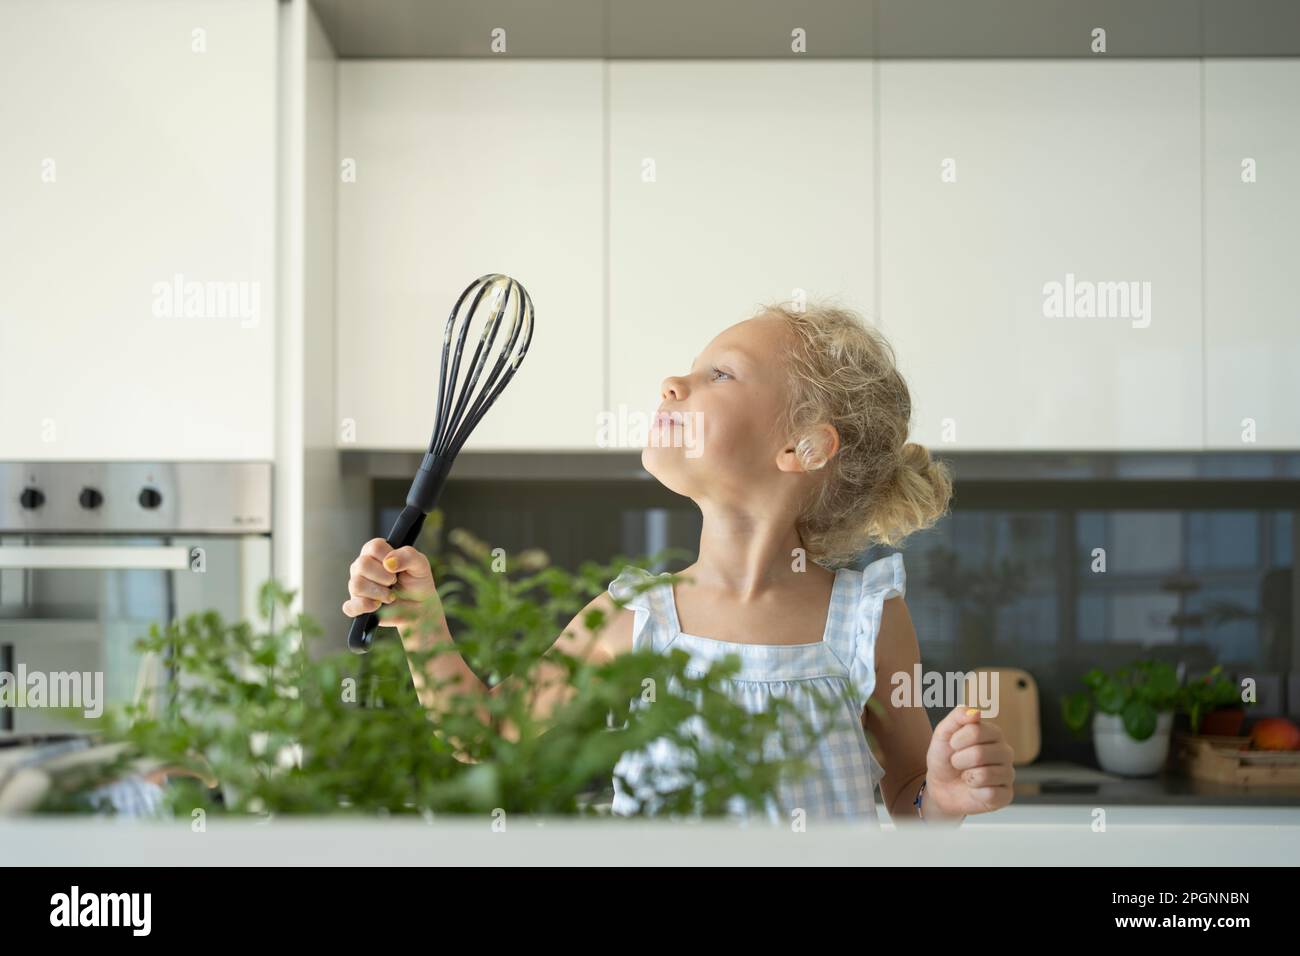 https://c8.alamy.com/comp/2PGNNBN/girl-holding-egg-beater-in-kitchen-at-home-2PGNNBN.jpg